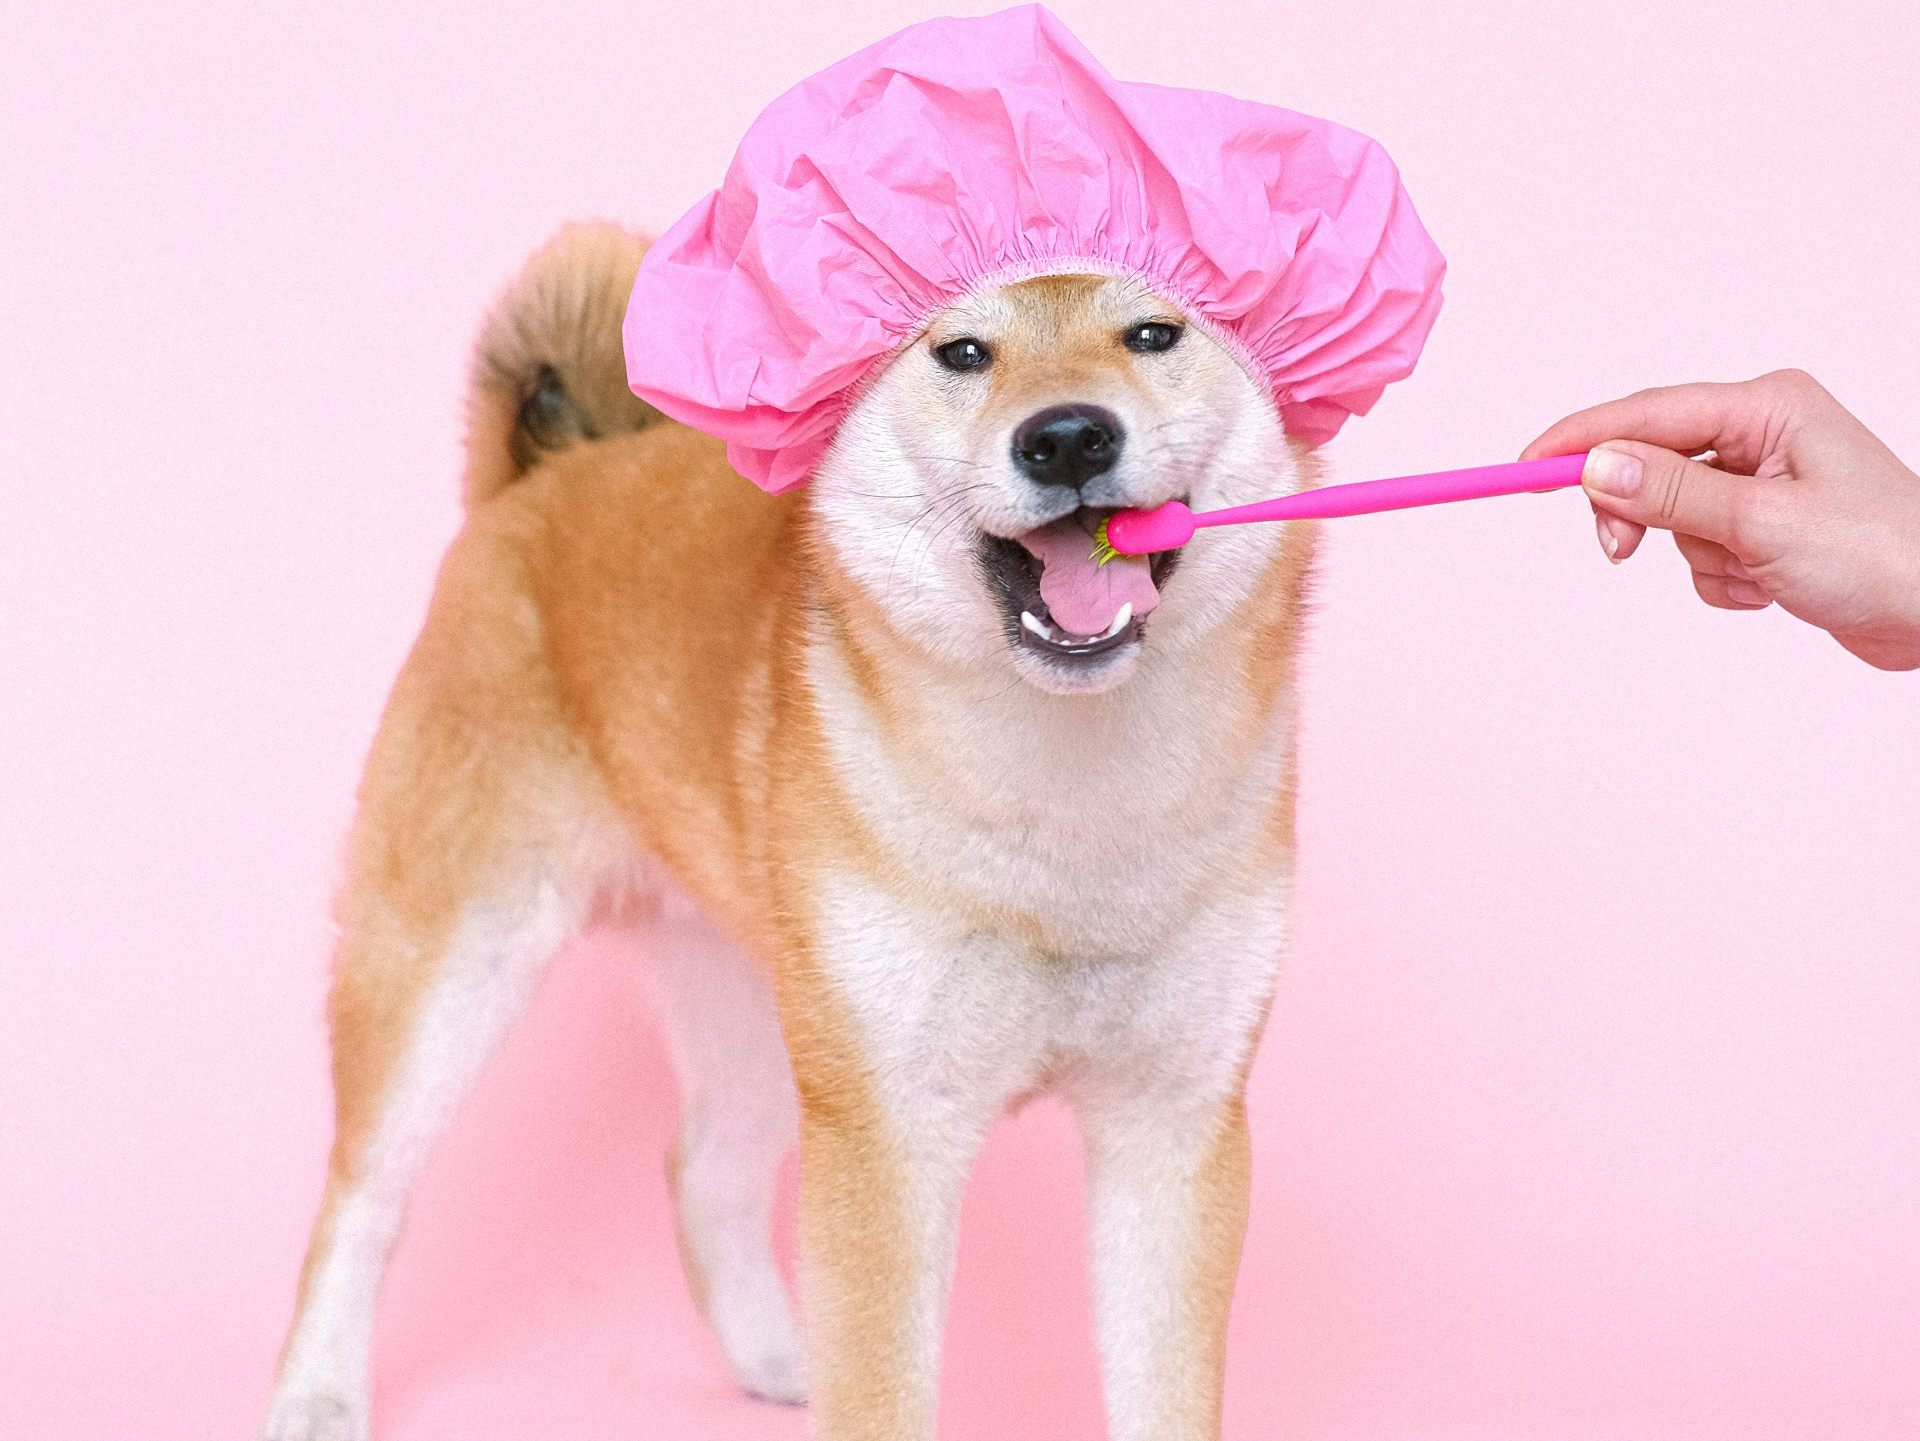 Dog in pink shower cap brushing teeth